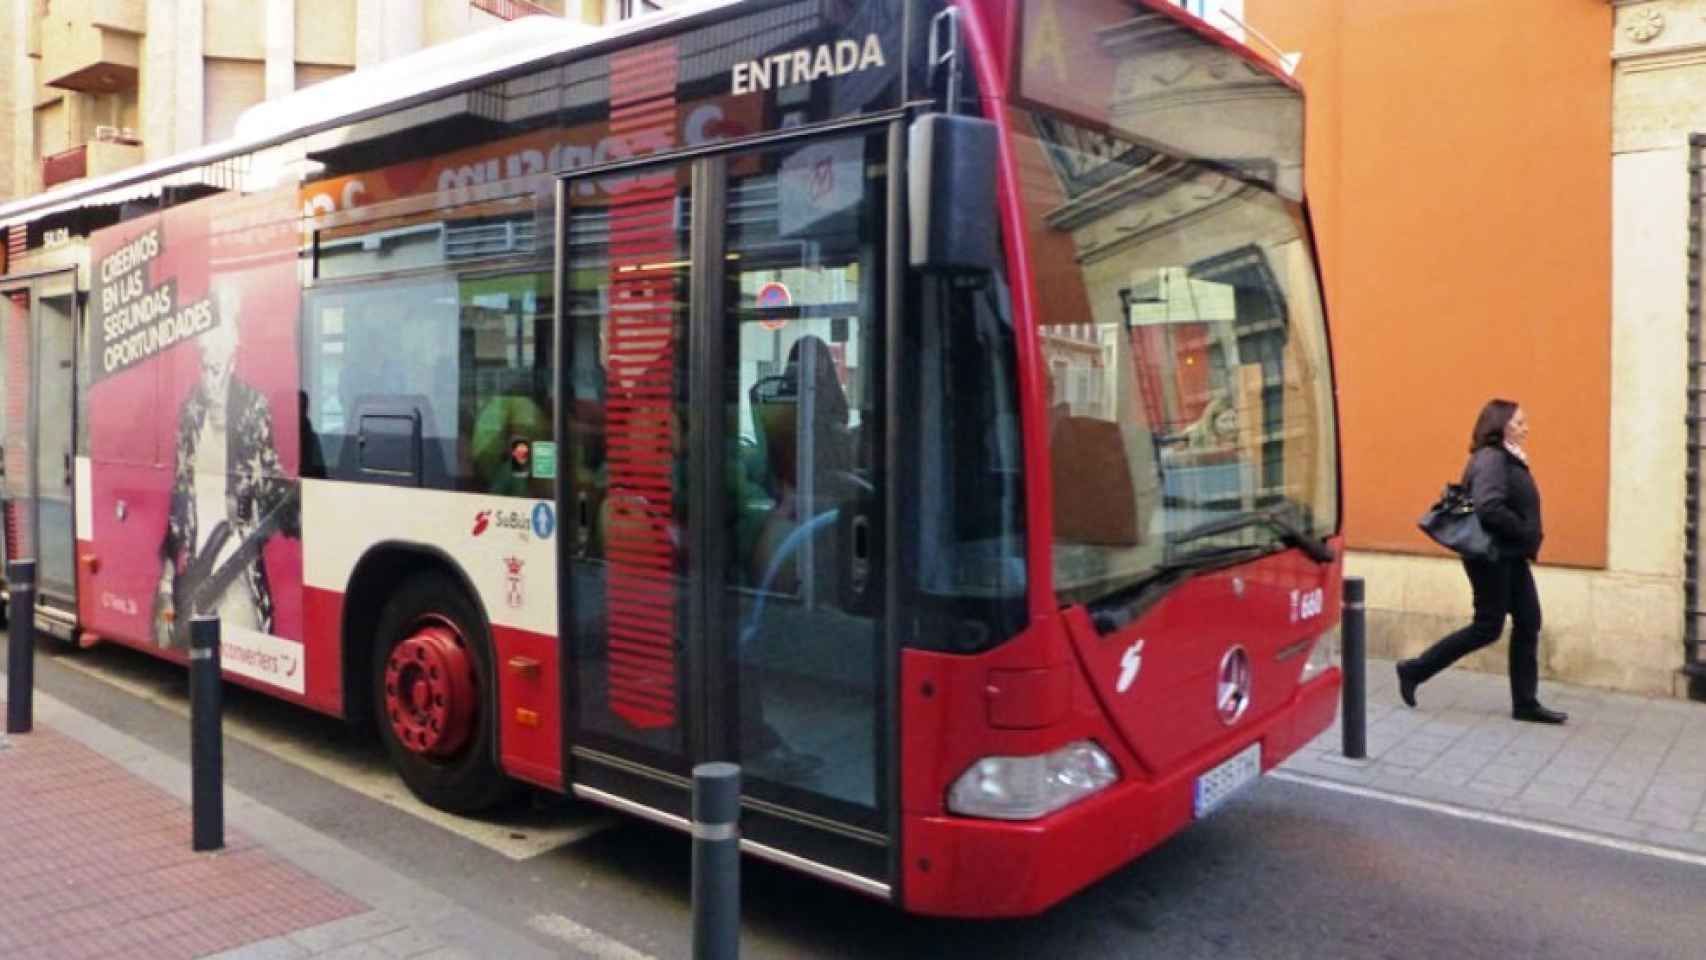 Autobús urbano de Albacete.